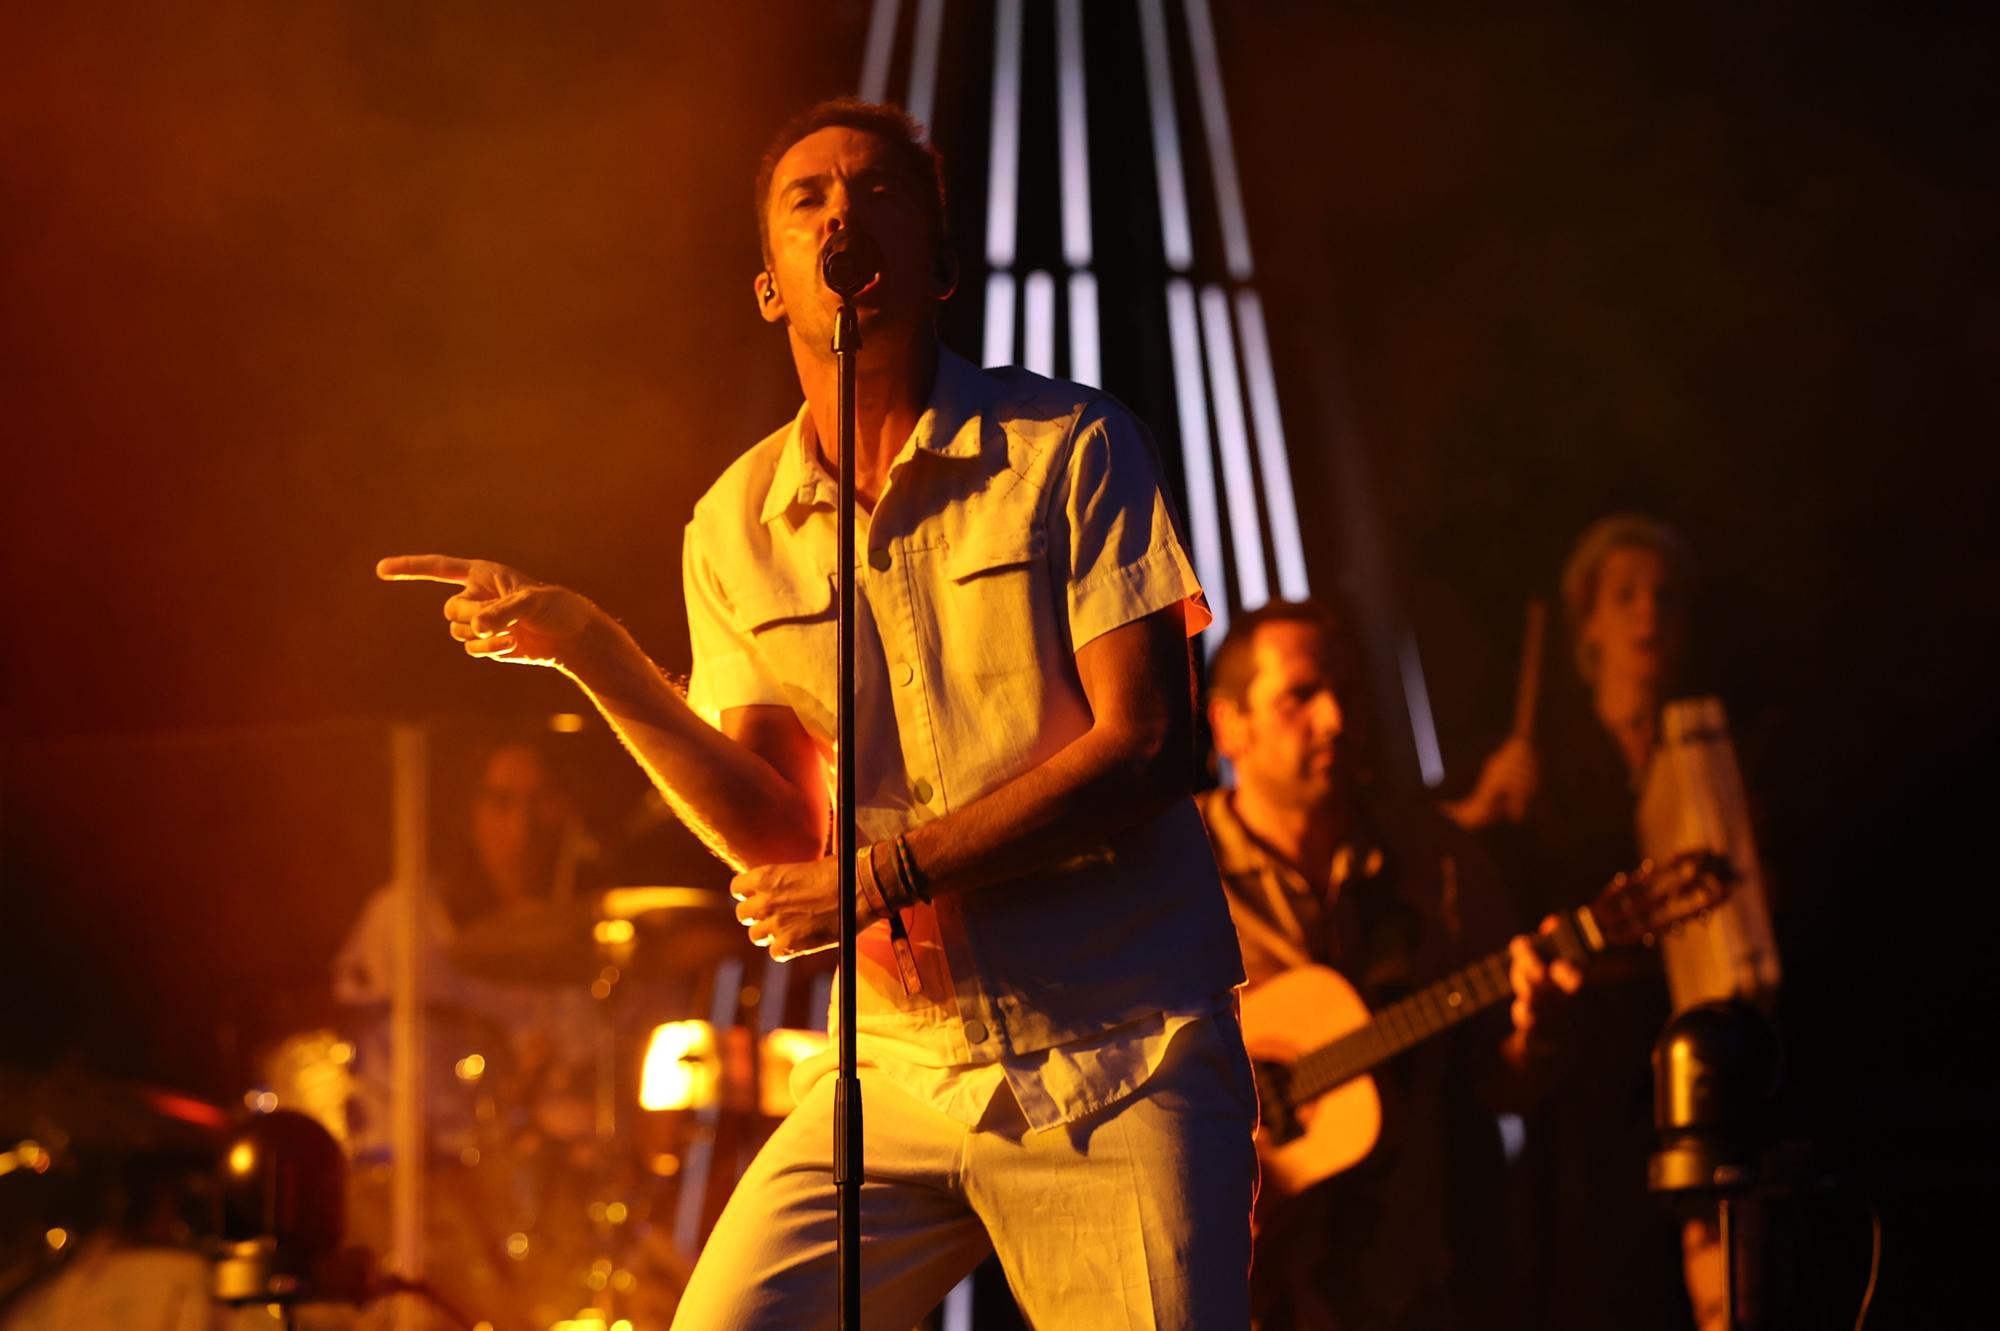 El cantante Juan Pedro Martín 'Pucho', de la banda madrileña Vetusta Morla, durante el concierto que ofrecen hoy viernes en el Wanda Metropolitano, en Madrid.